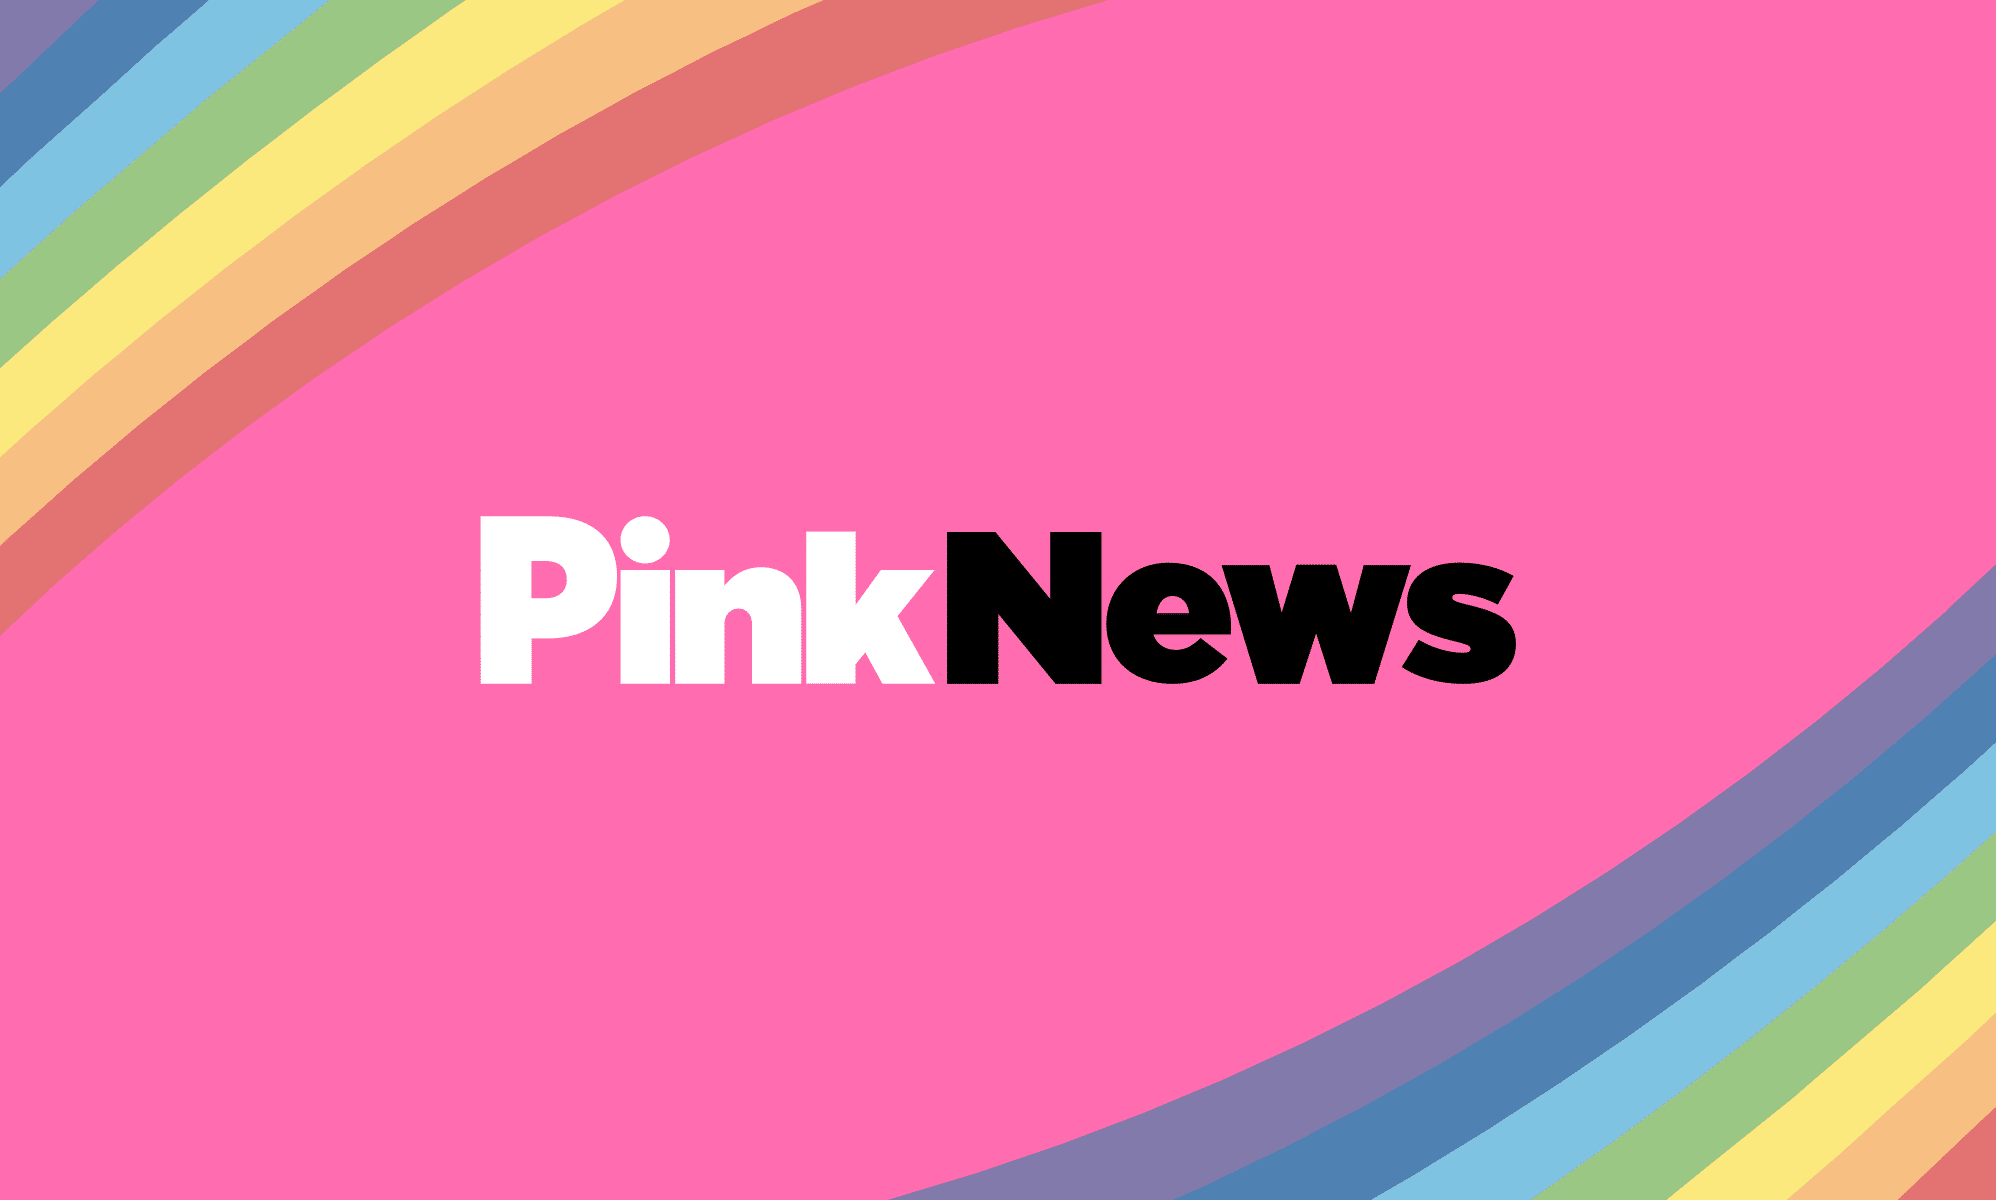 PinkNews Awards